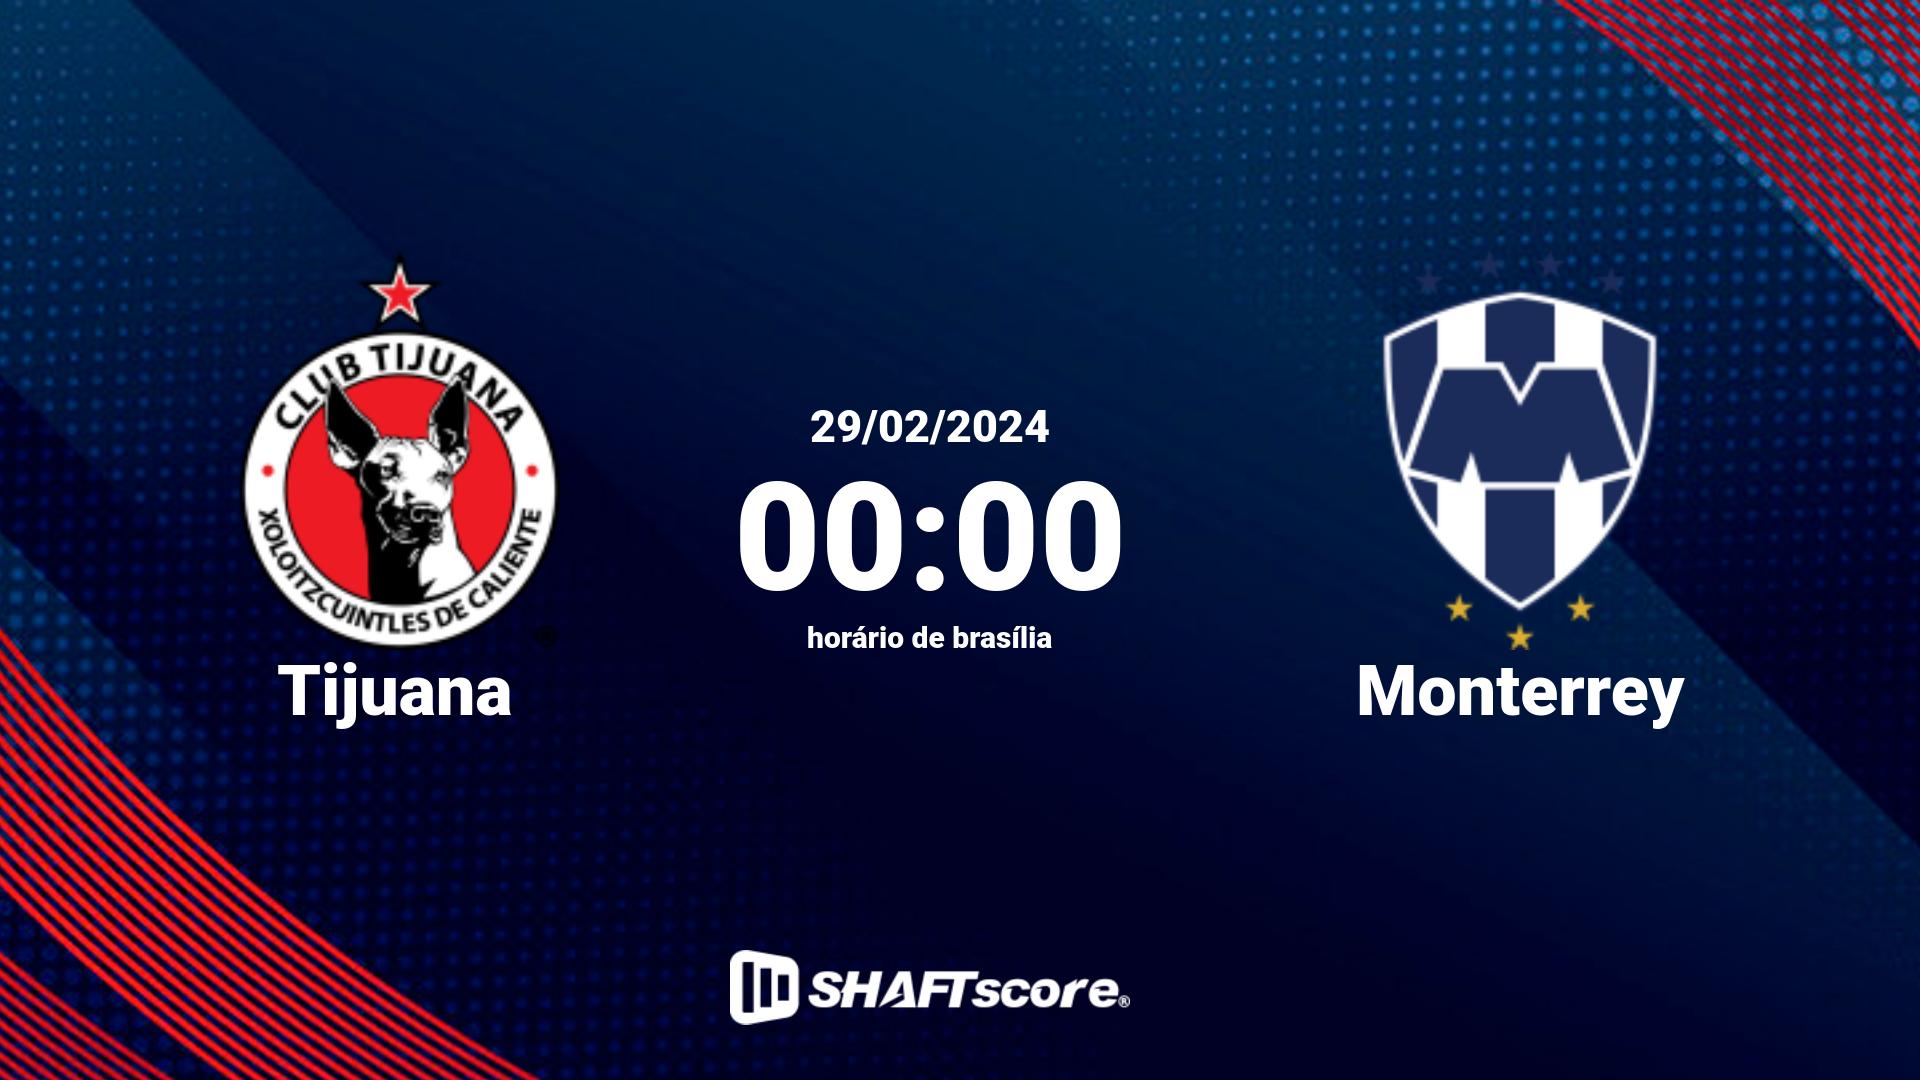 Estatísticas do jogo Tijuana vs Monterrey 29.02 00:00